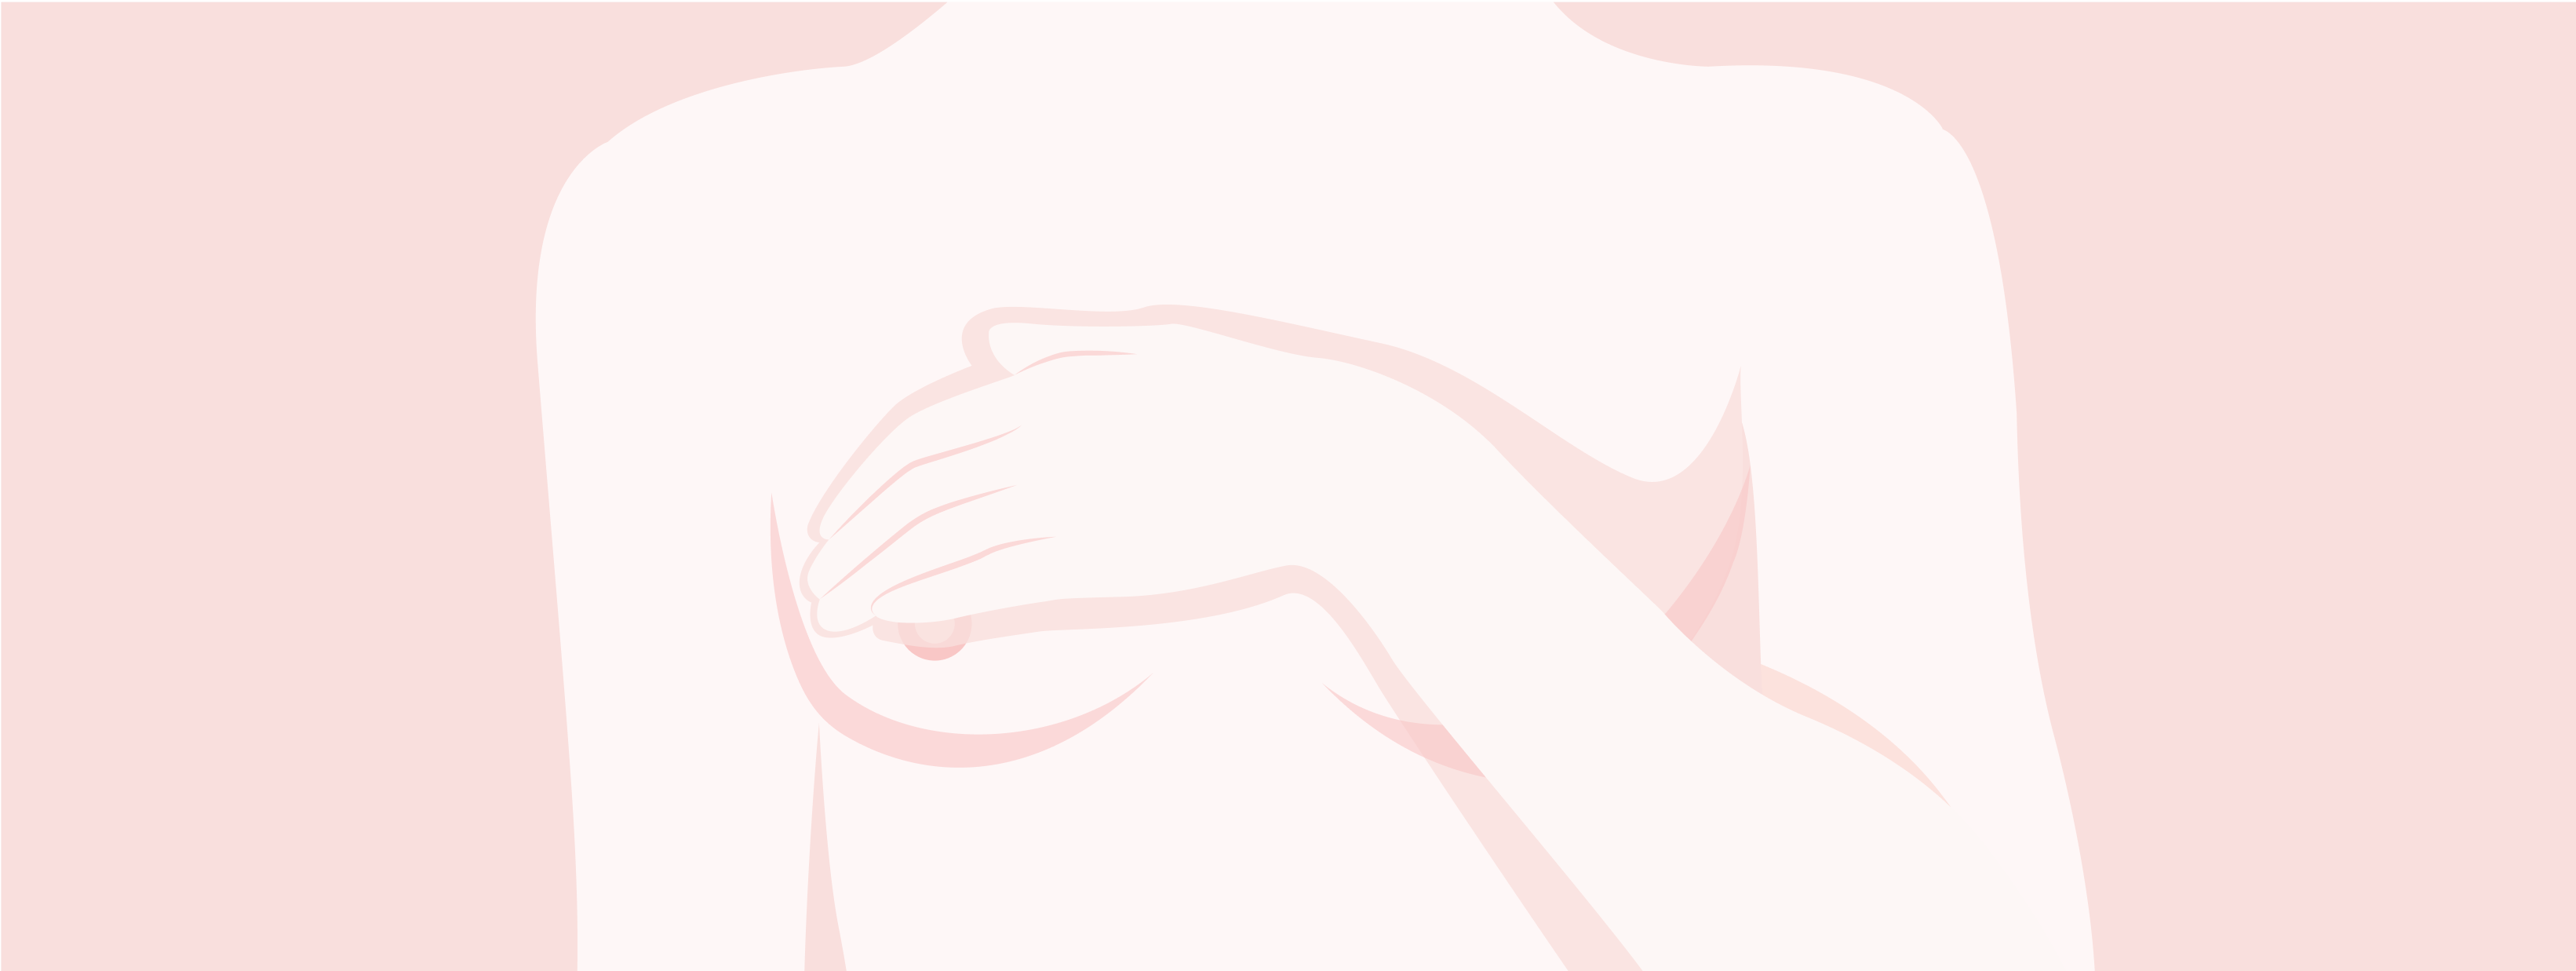 Illustration du torse d'une femme avec l'inscription TNBC. La femme porte une main à sa poitrine.